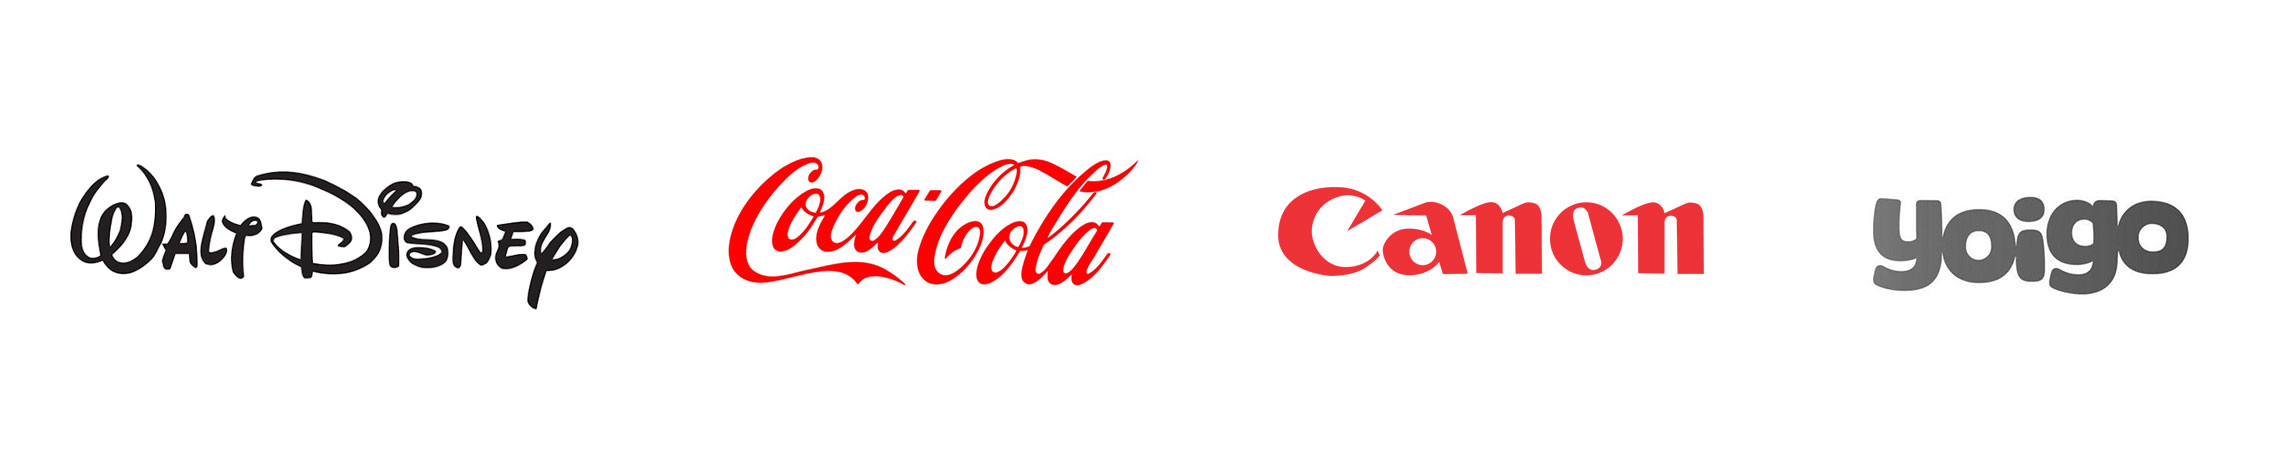 Ejemplos de logotipos